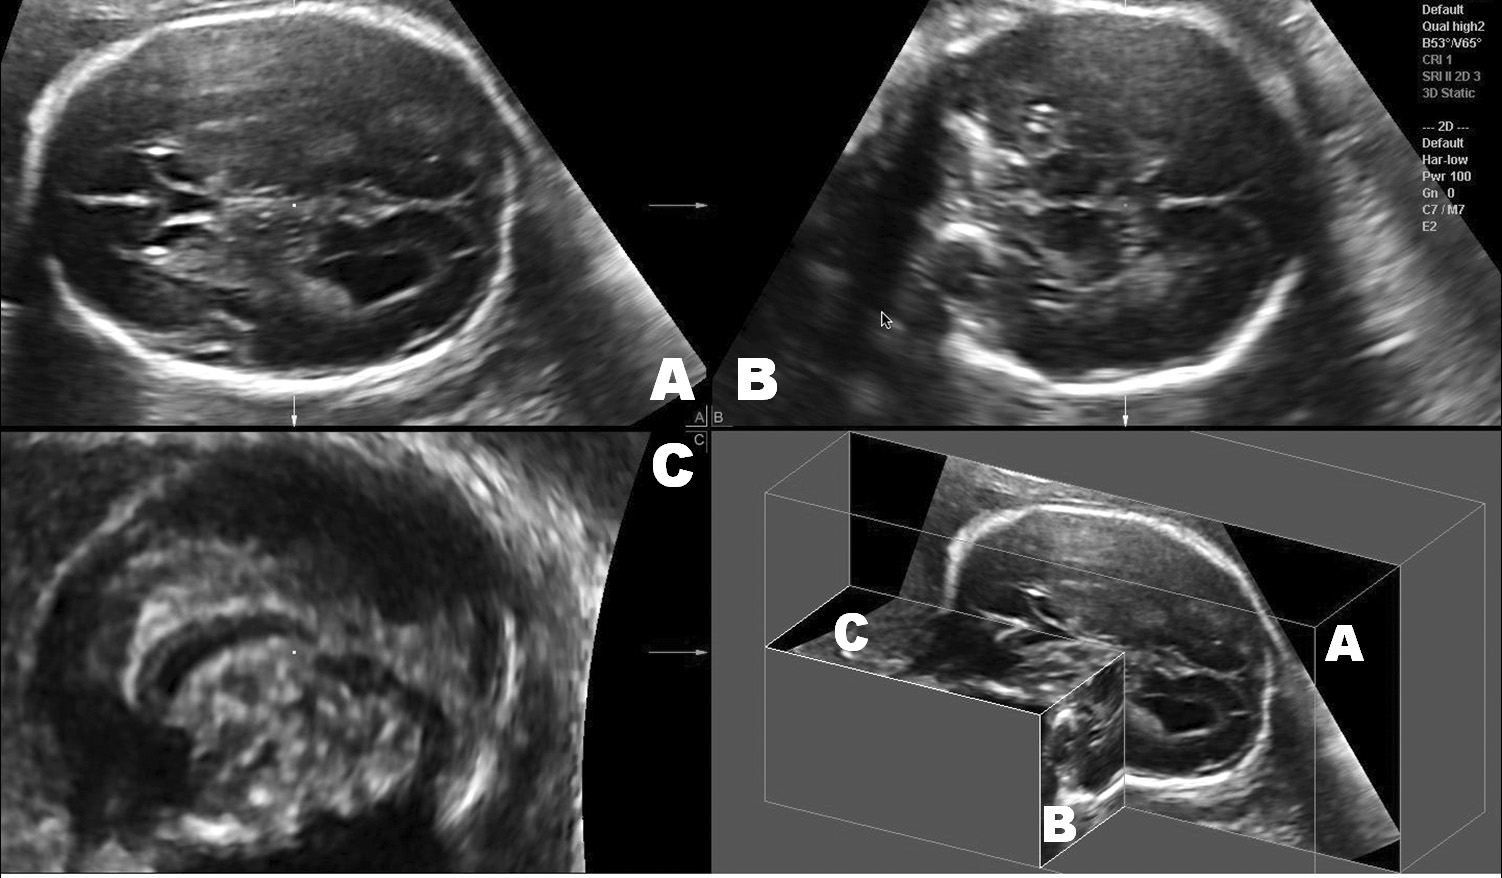 ΥΠΕΡΗΧΟΓΡΑΦΙΑ ΤΟΜ.8, ΤΕΥΧ.2, ΣΕΛ. 51-62, 2011 Εικόνα 1. Οι τρεις βασικές τομές της εξέτασης ρουτίνας του εγκεφάλου. Α: διακοιλιακή τομή, Β: διαθαλαμική τομή, Γ: διαπαρεγκεφαλιδική τομή.